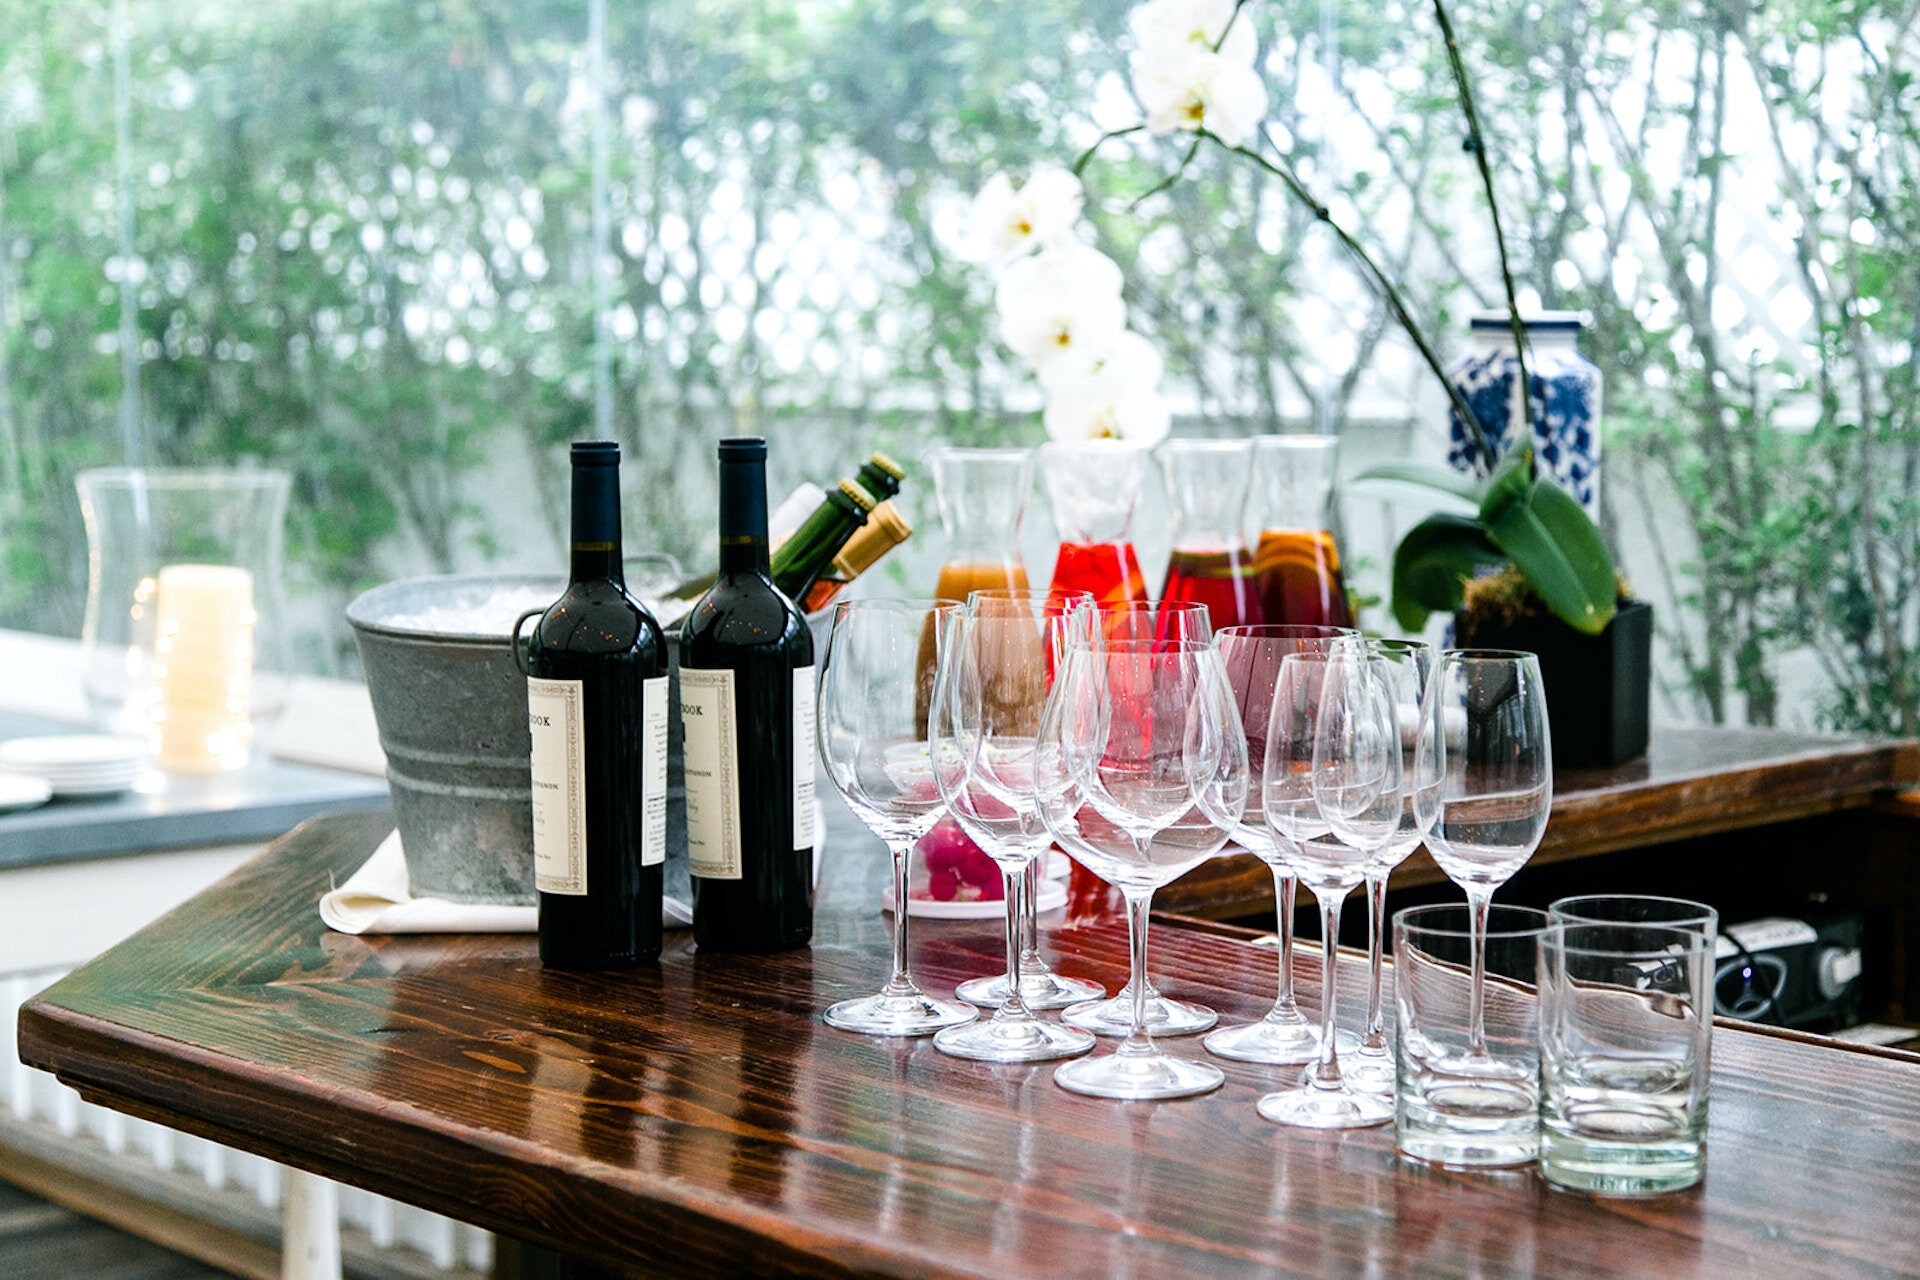 wine glasses on bar.jpg